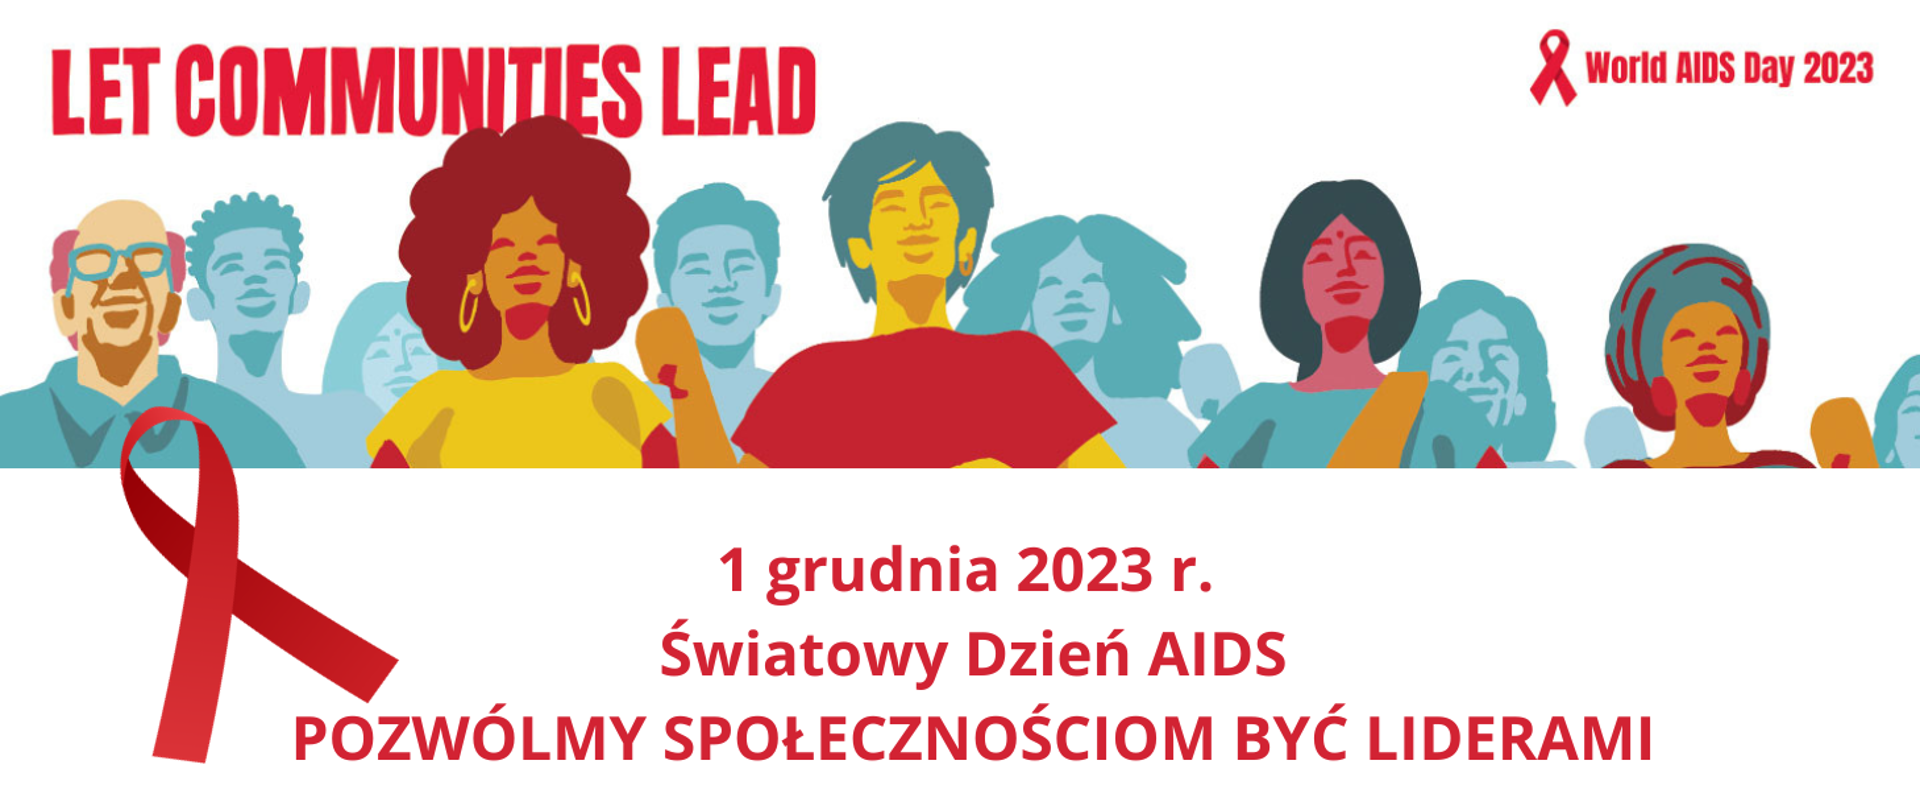 Plakat promujący Światowy dzień AIDS z rysunkami osób w tle